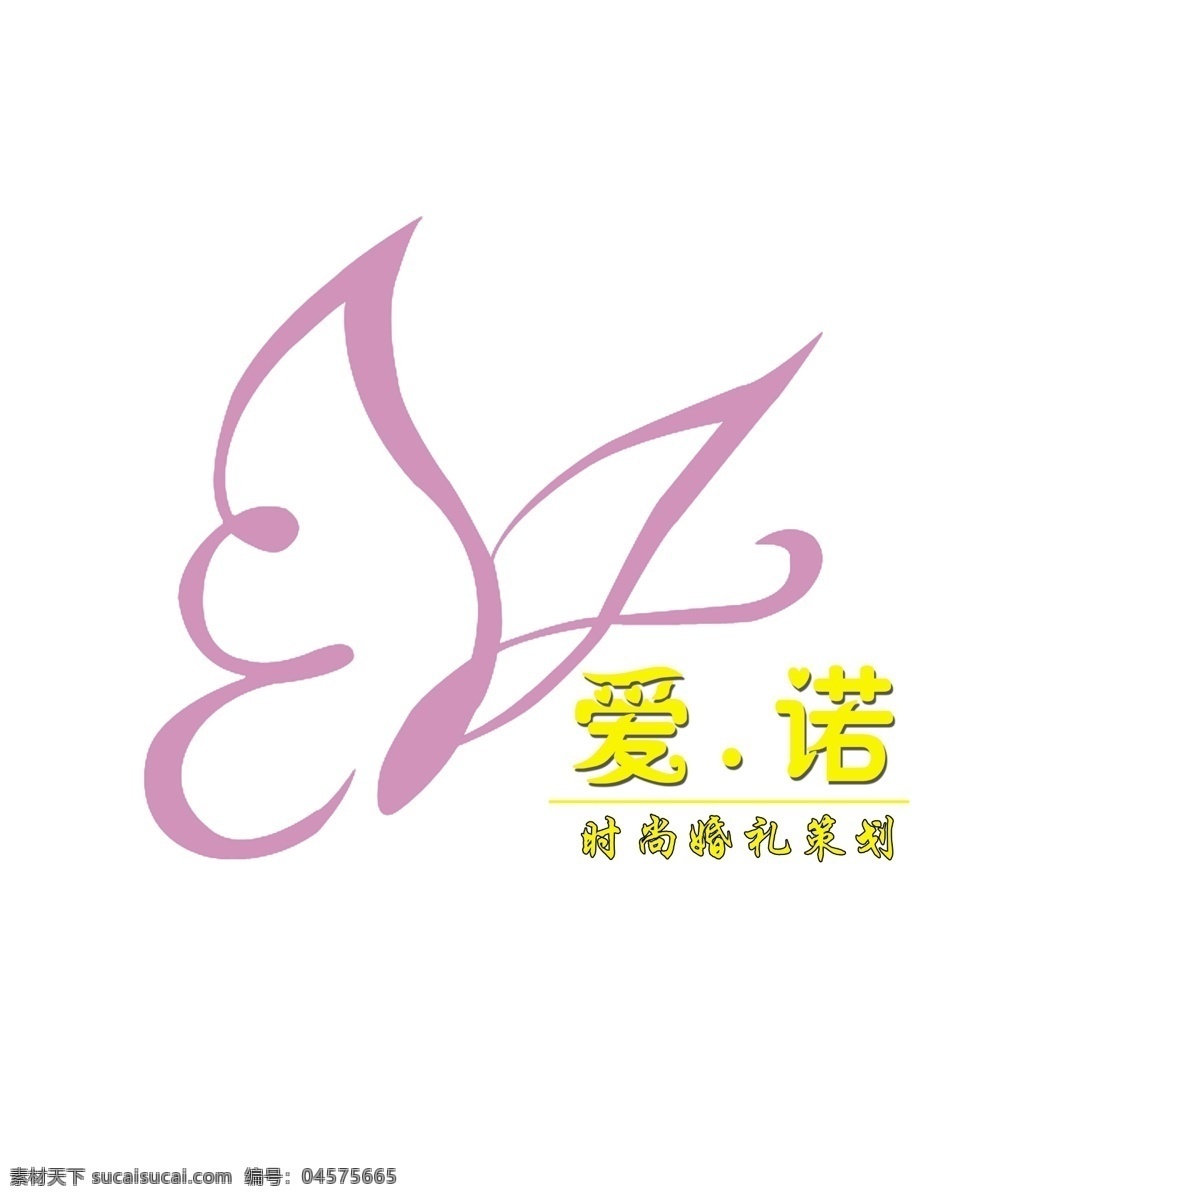 婚庆 logo 婚礼策划 爱诺 psd源文件 logo设计